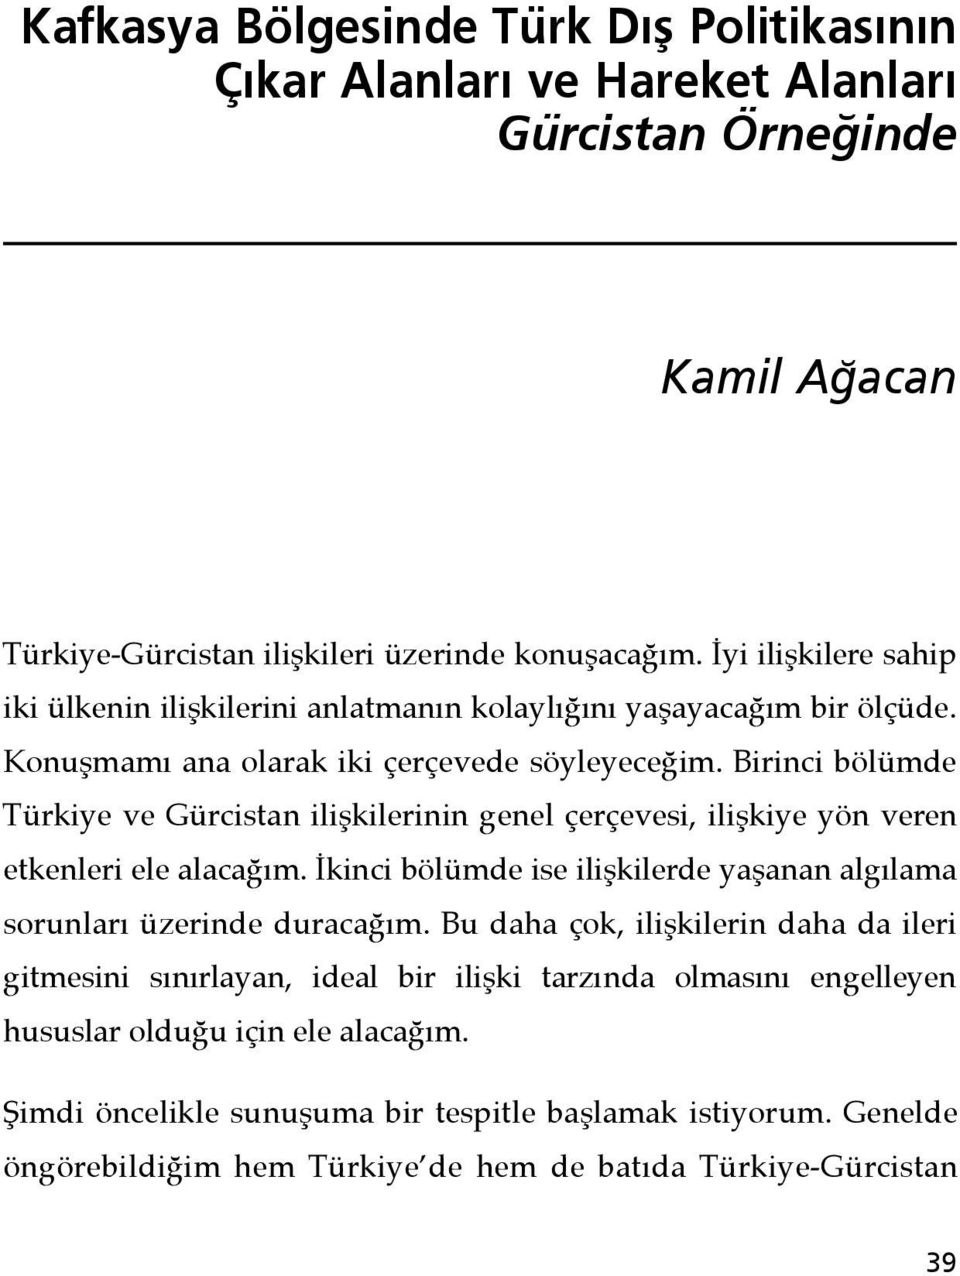 Birinci bölümde Türkiye ve Gürcistan ilişkilerinin genel çerçevesi, ilişkiye yön veren etkenleri ele alacağım. İkinci bölümde ise ilişkilerde yaşanan algılama sorunları üzerinde duracağım.